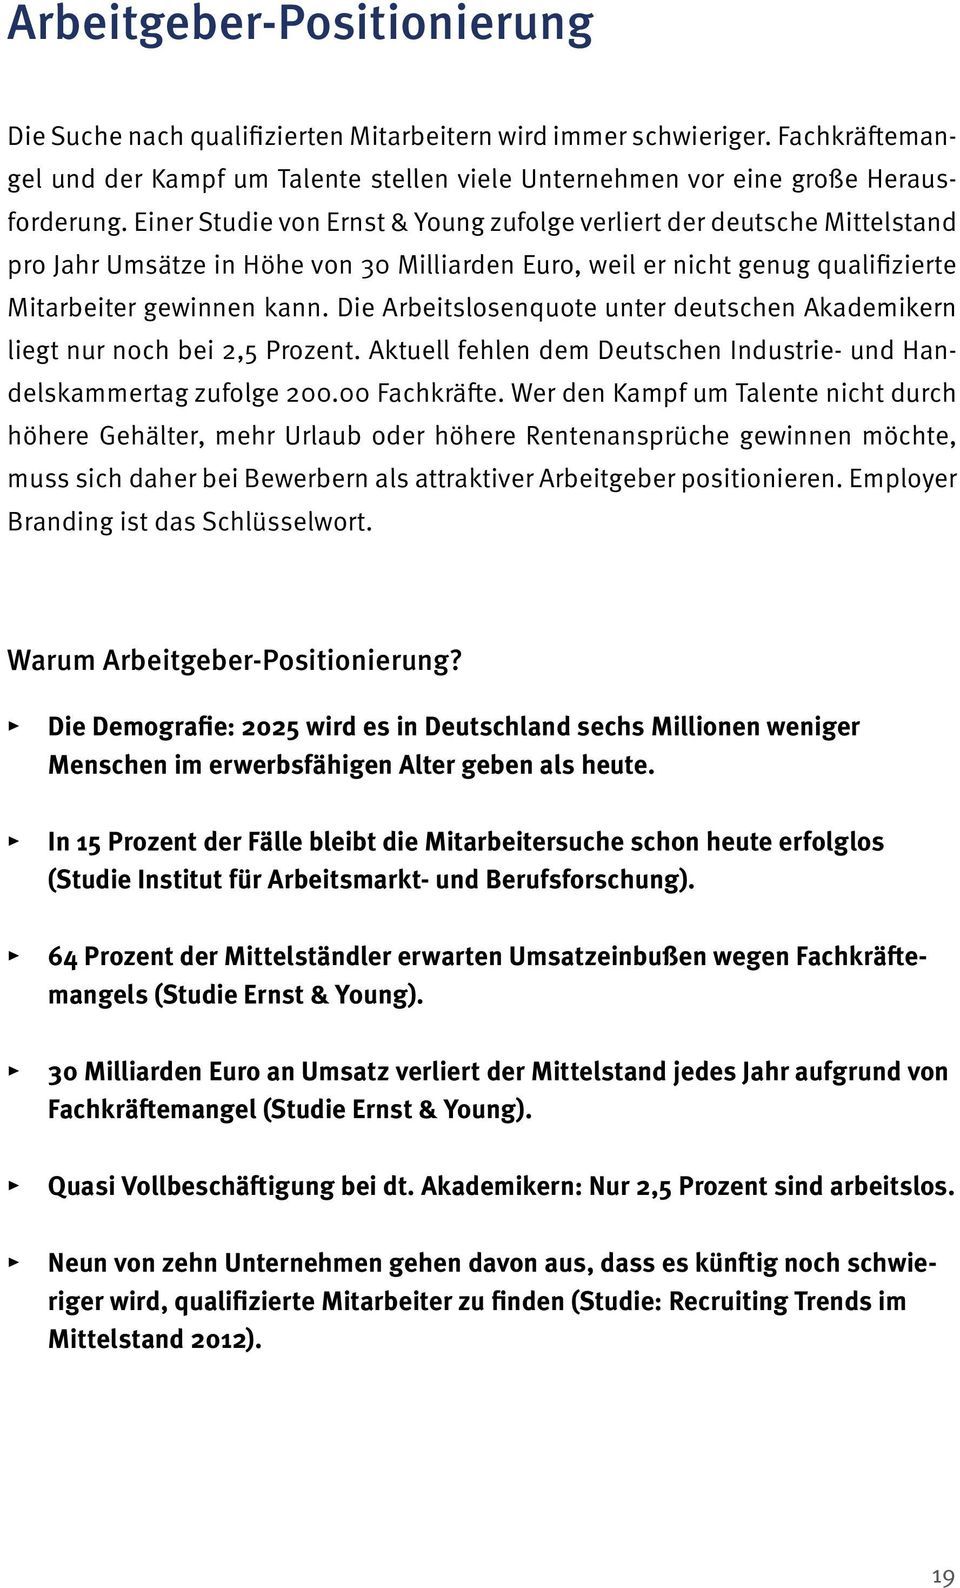 Die Arbeitslosenquote unter deutschen Akademikern liegt nur noch bei 2,5 Prozent. Aktuell fehlen dem Deutschen Industrie- und Handelskammertag zufolge 200.00 Fachkräfte.